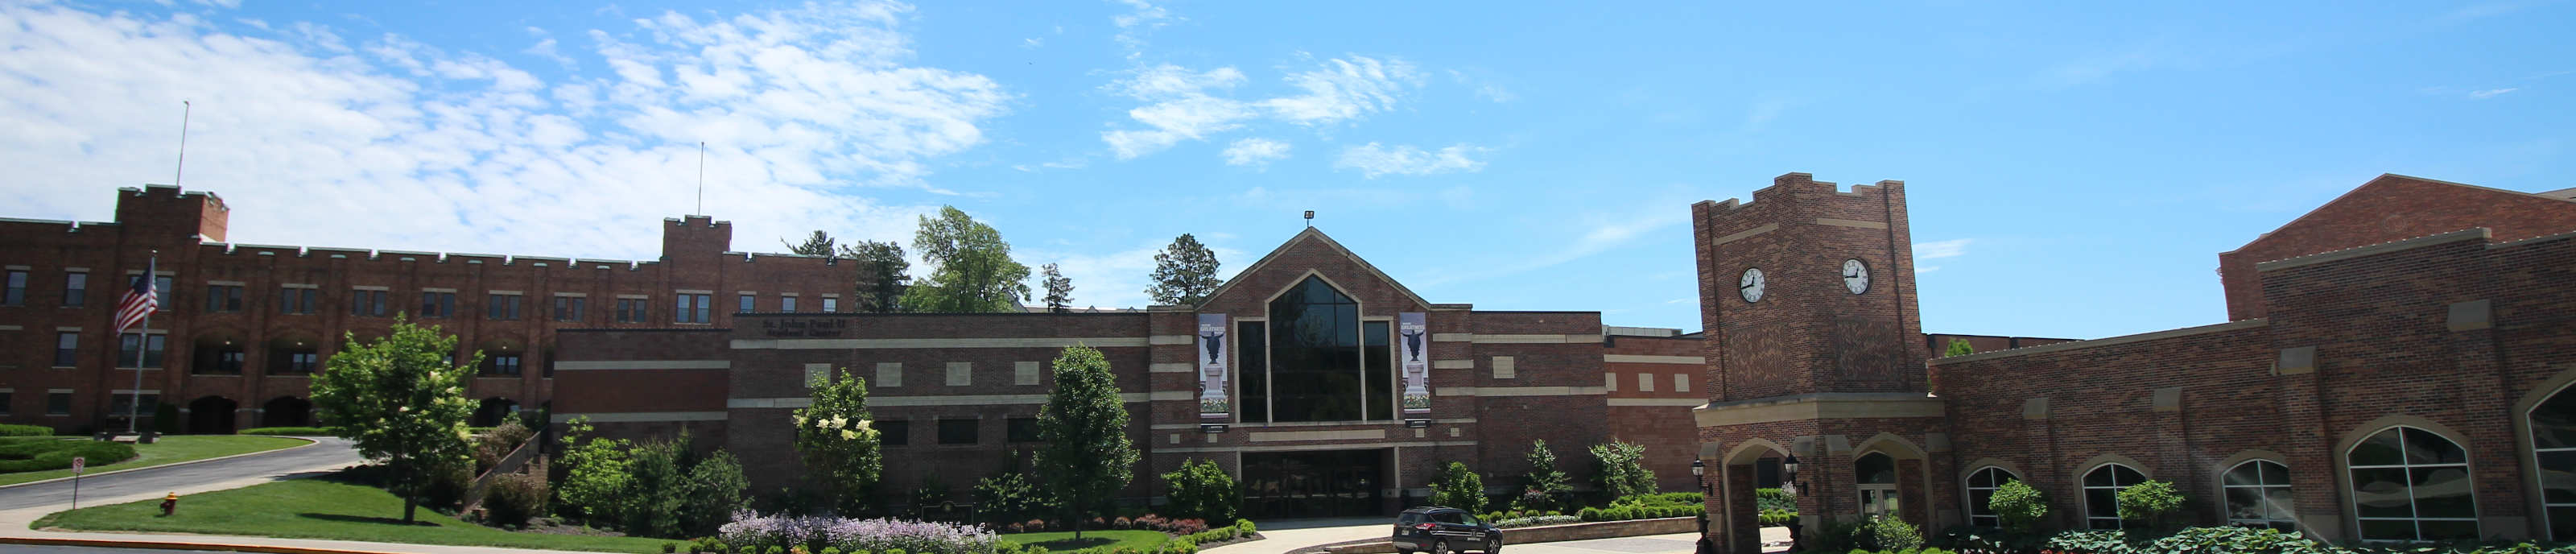 St. John Paul II Student Center